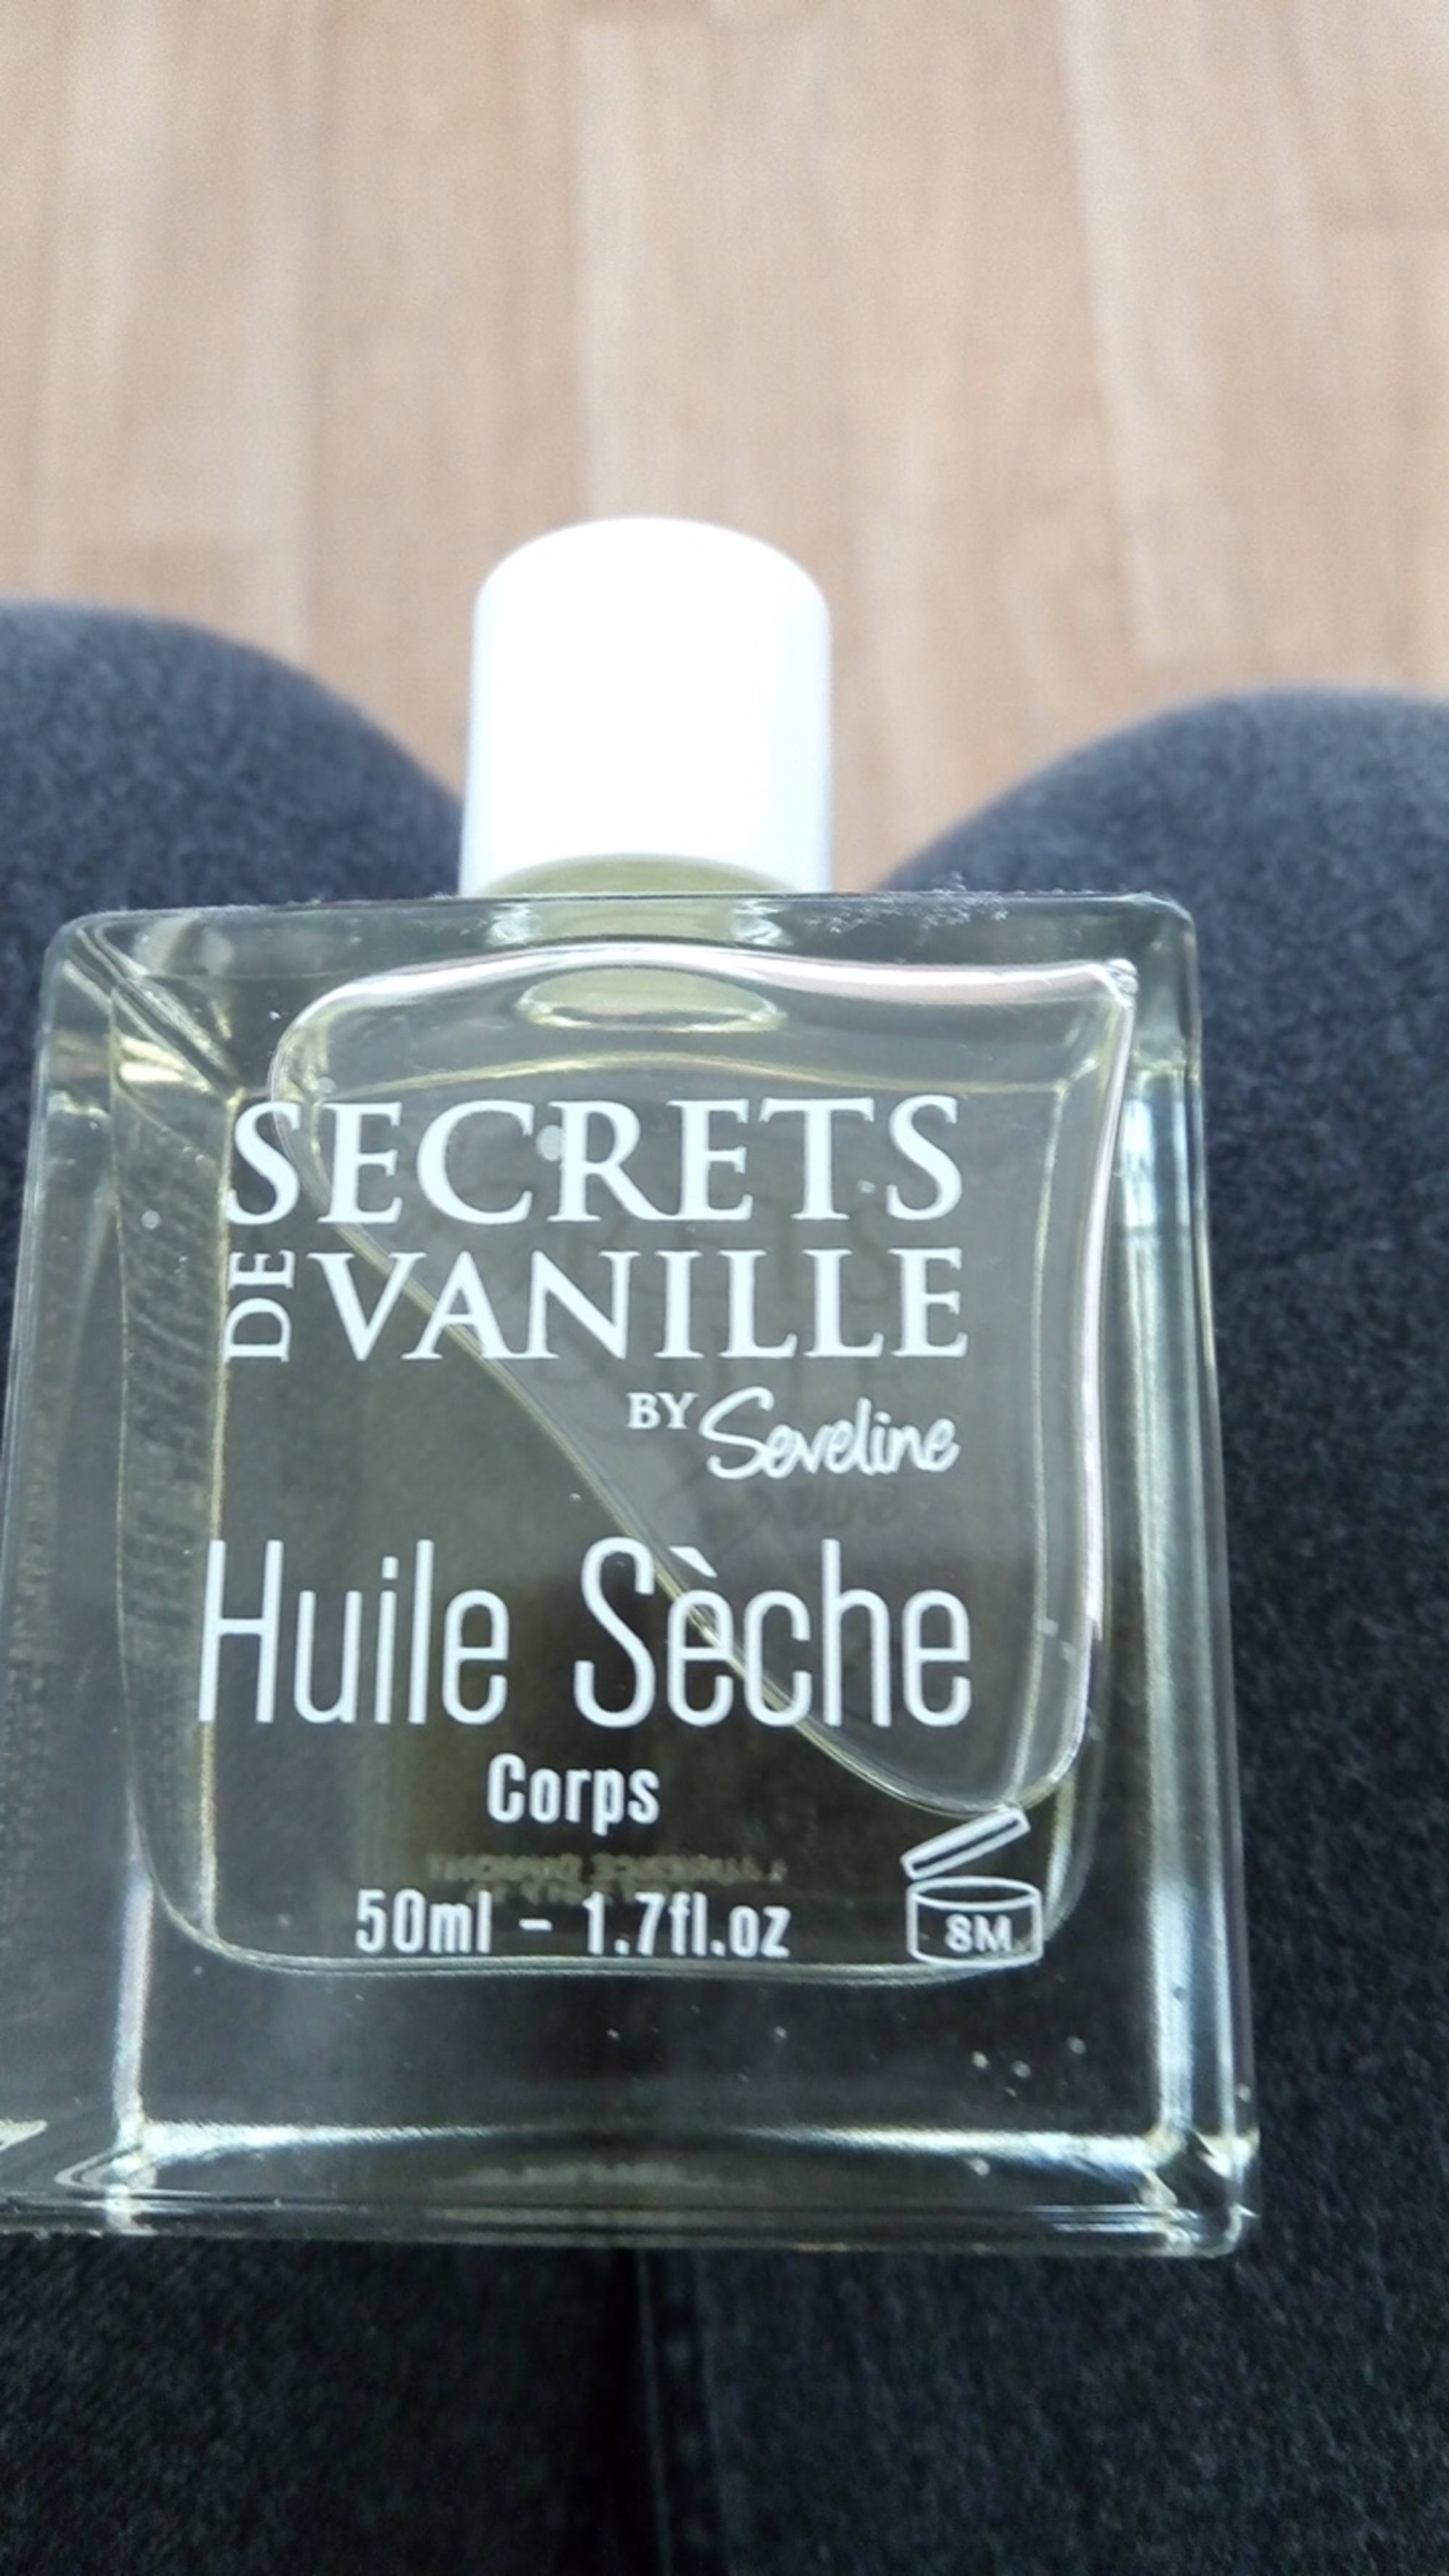 SEVELINE - Secrets de vanille - Huile sèche corps